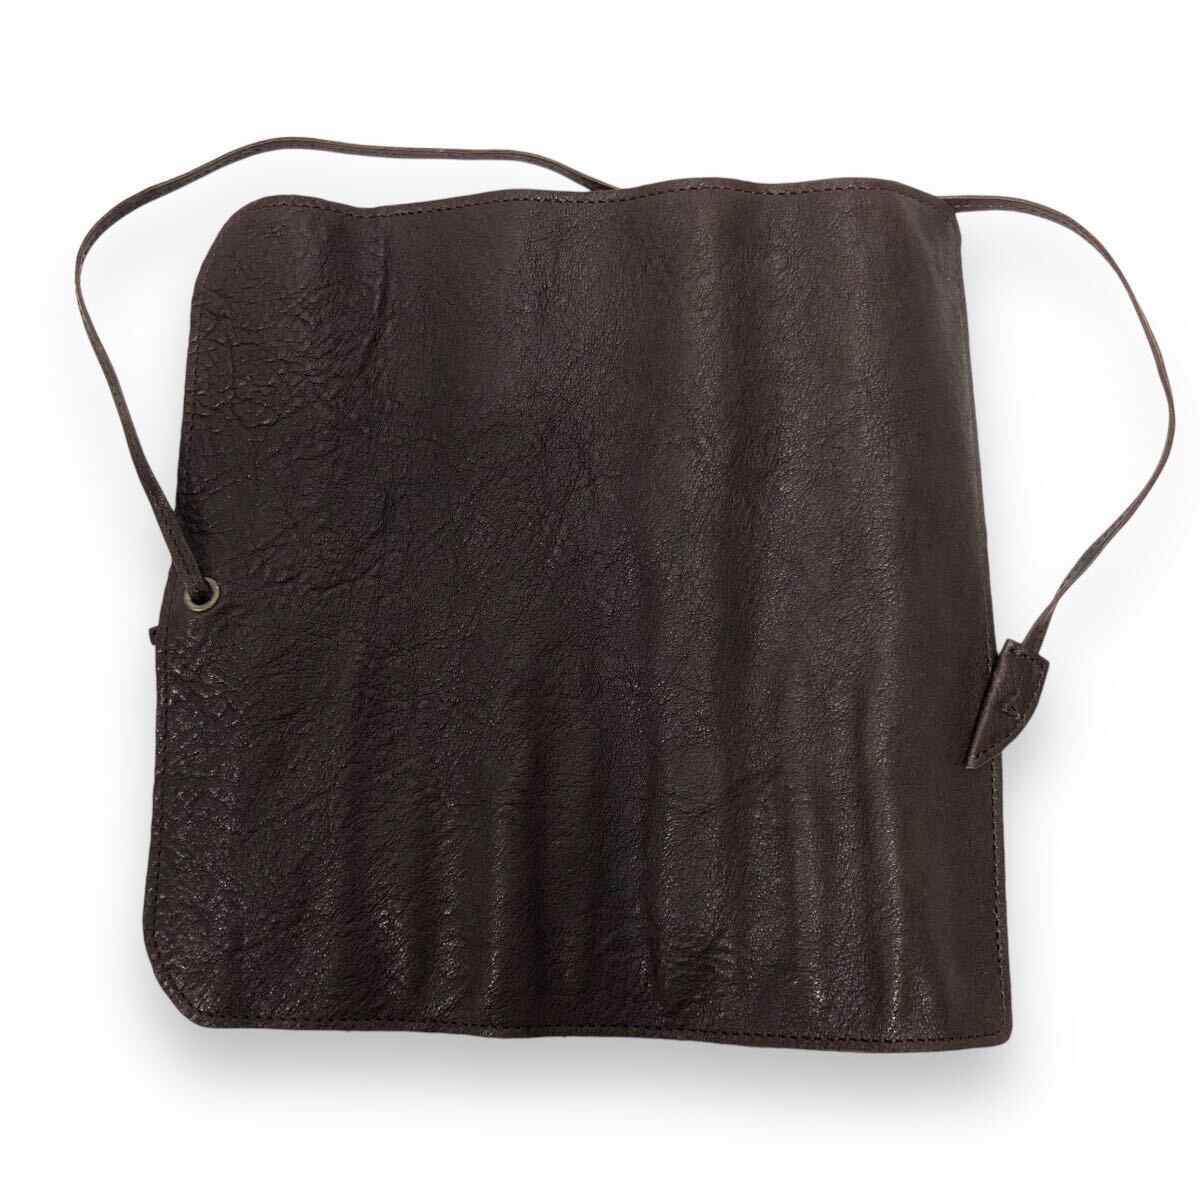 V прекрасный товар земля магазин сумка производство место roll пенал натуральная кожа темно-коричневый пакет имеется канцелярские товары RC4352